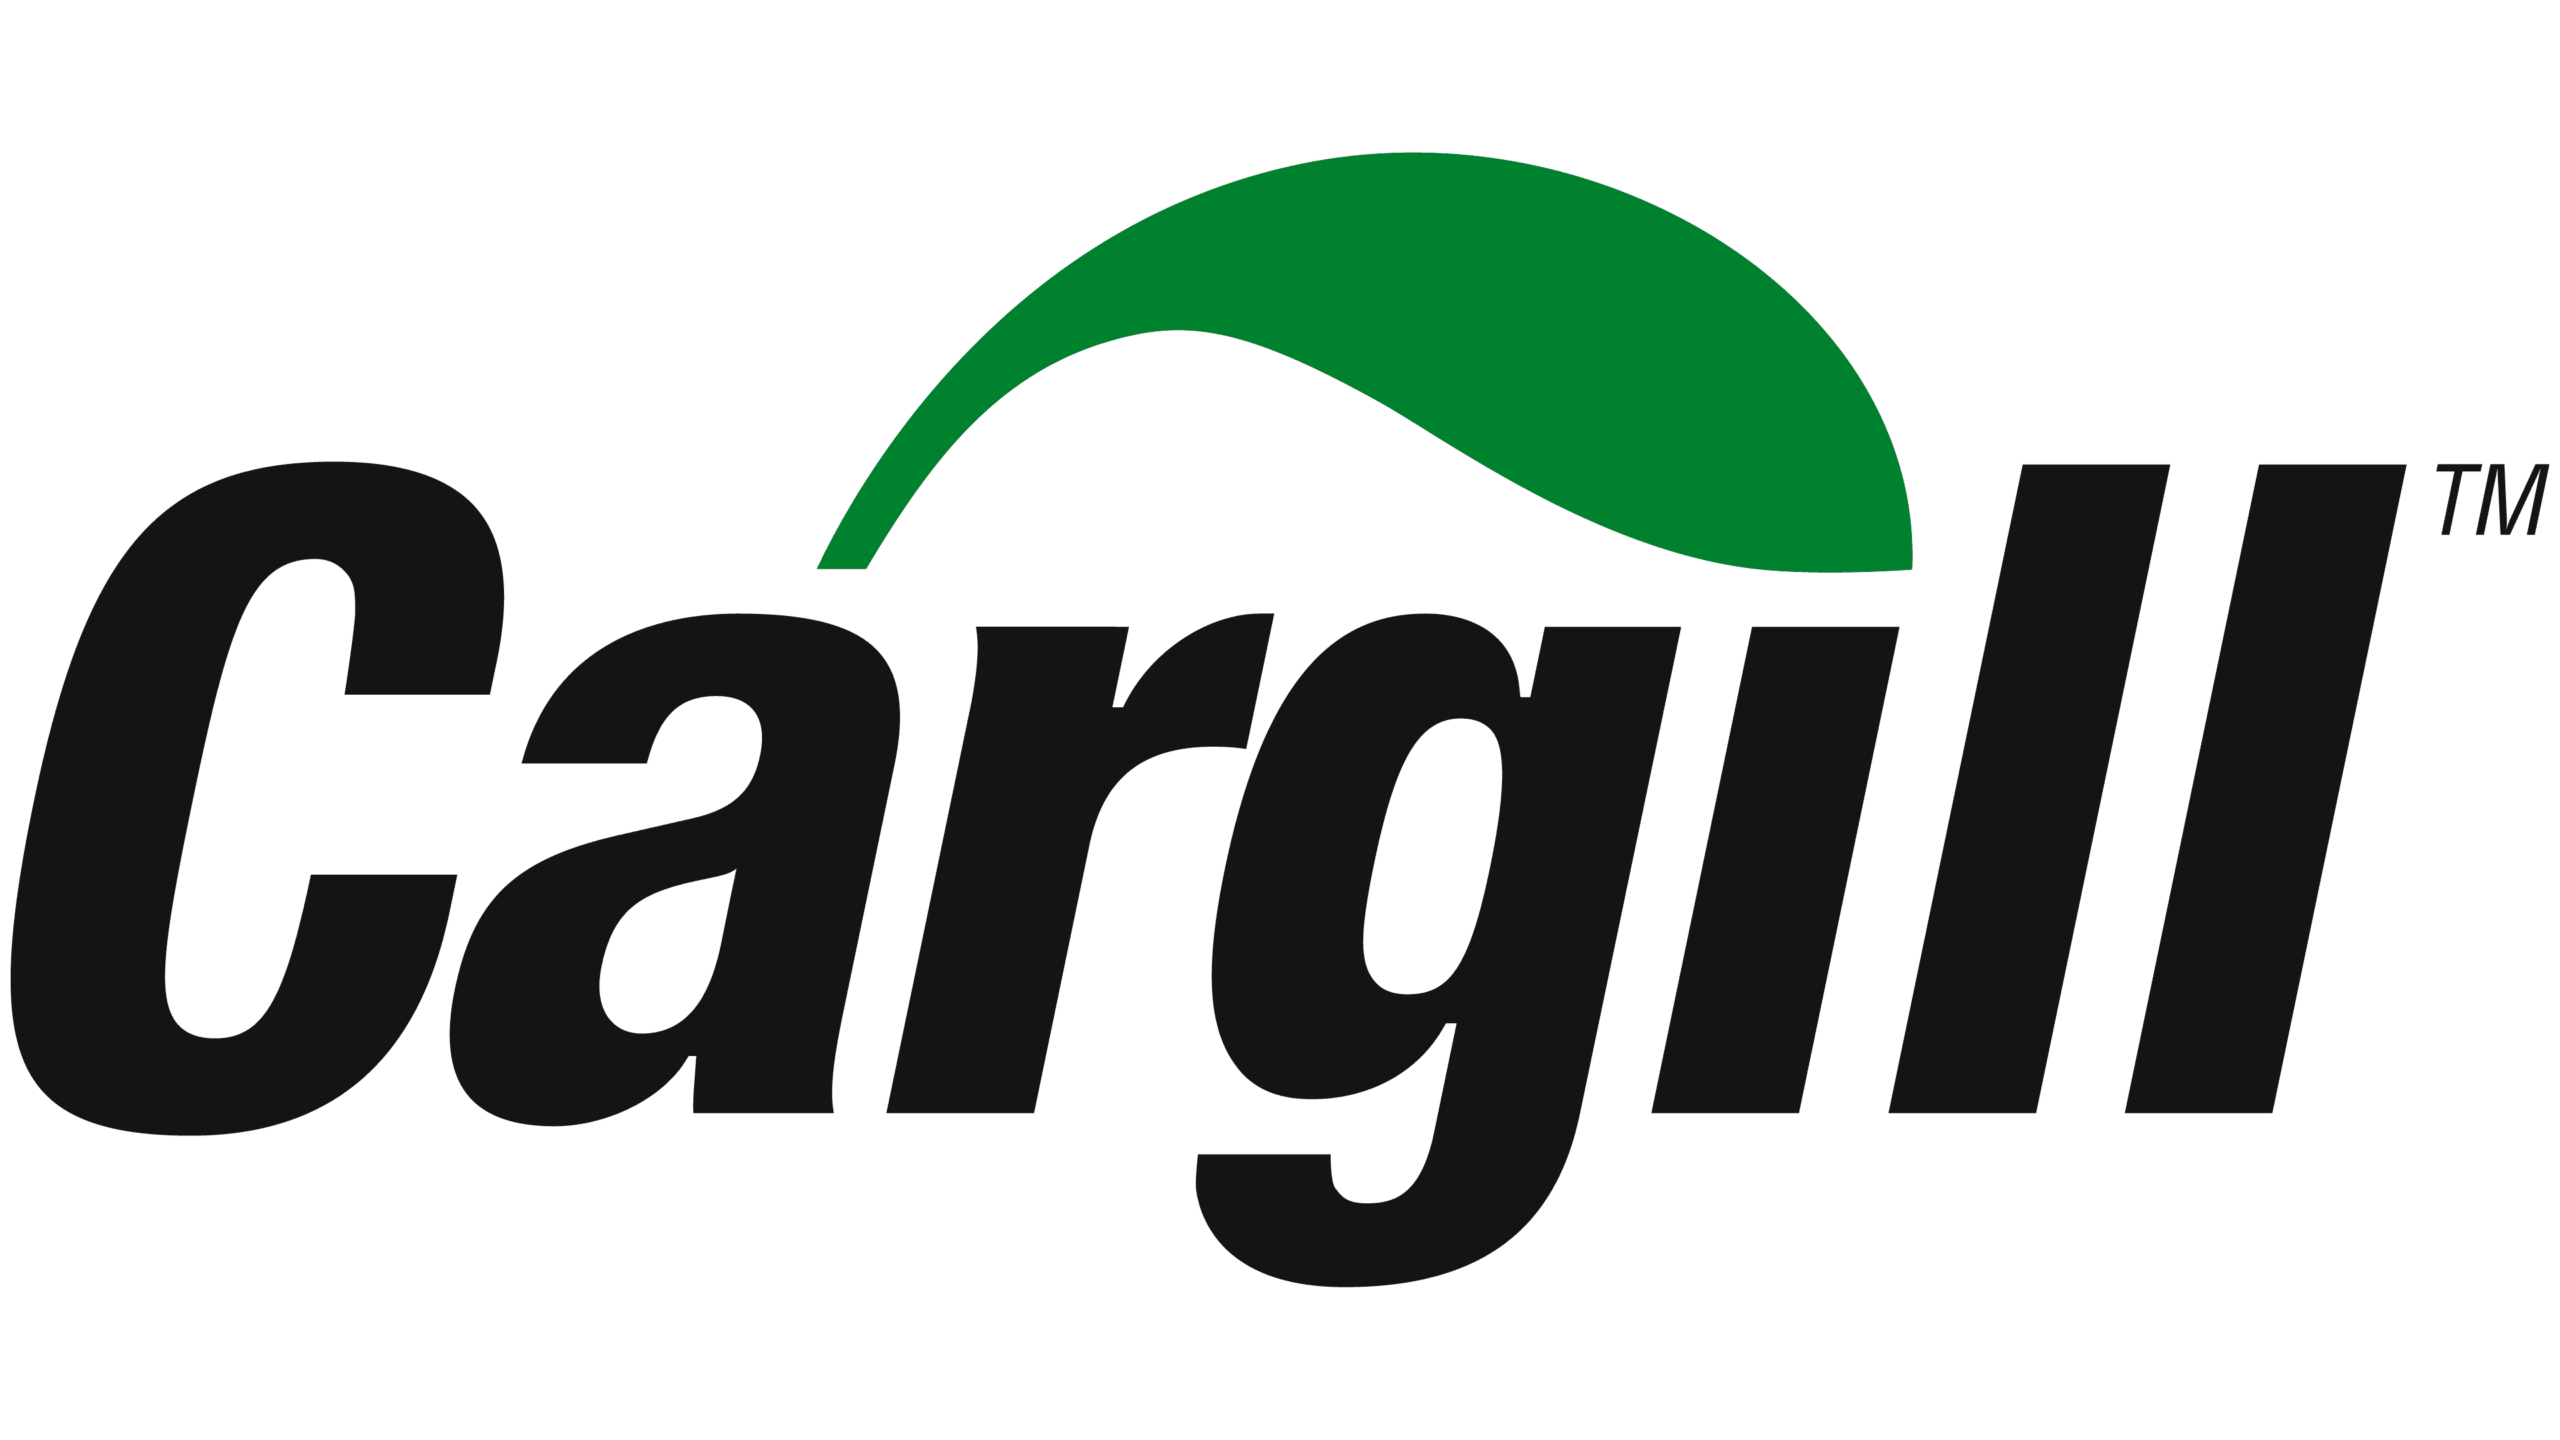 cargill-logo